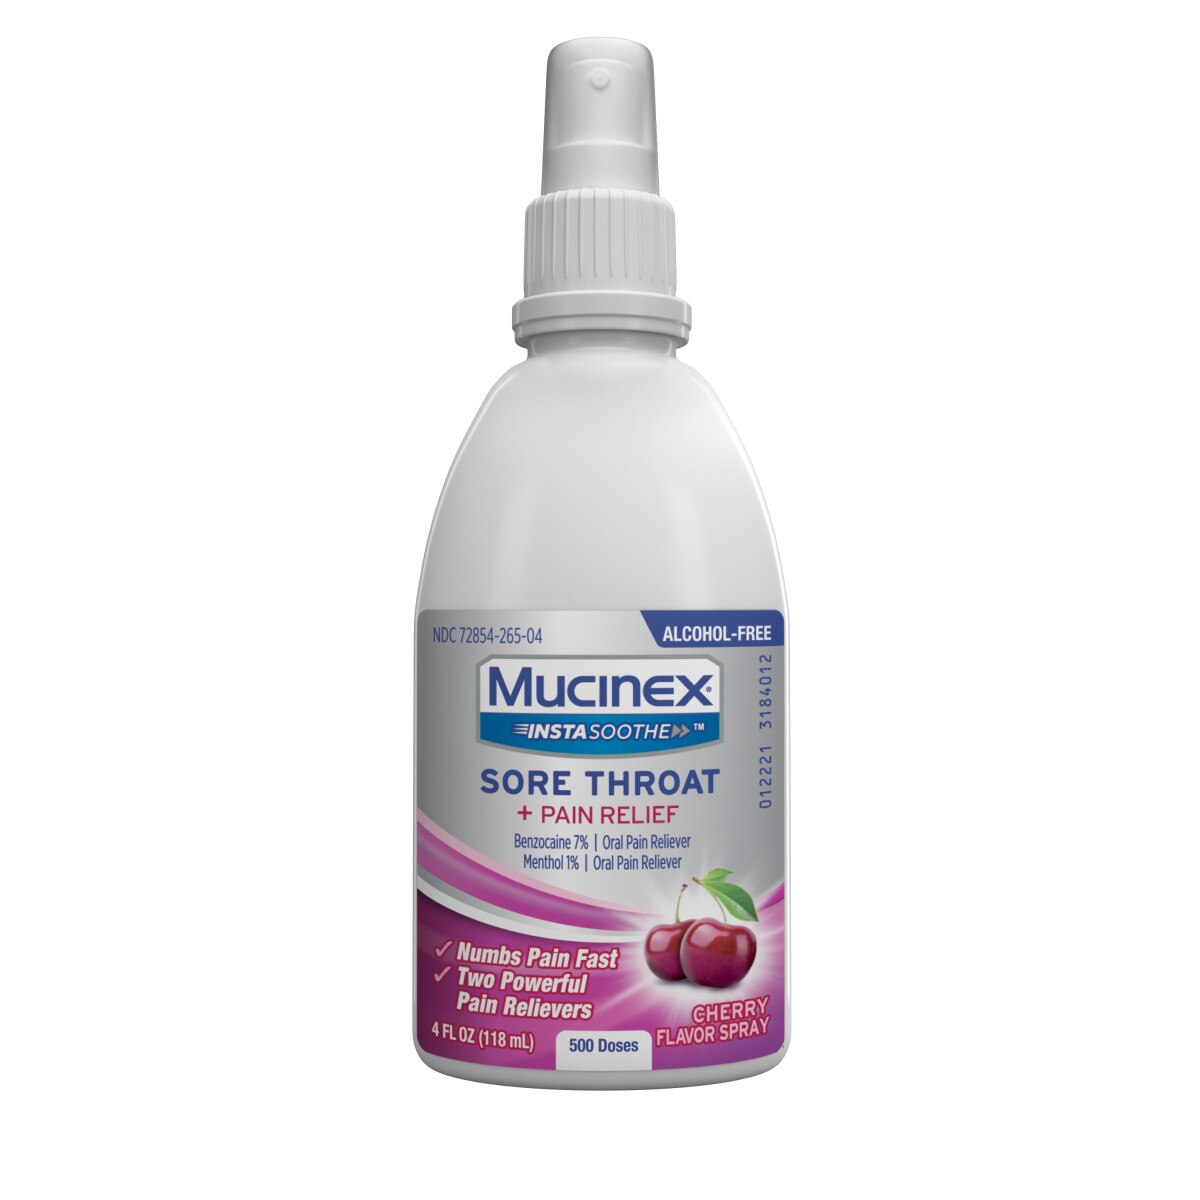 MUCINEX InstaSoothe Sore Throat + Pain Relief - Spray sabor Cherry, 3.8 oz